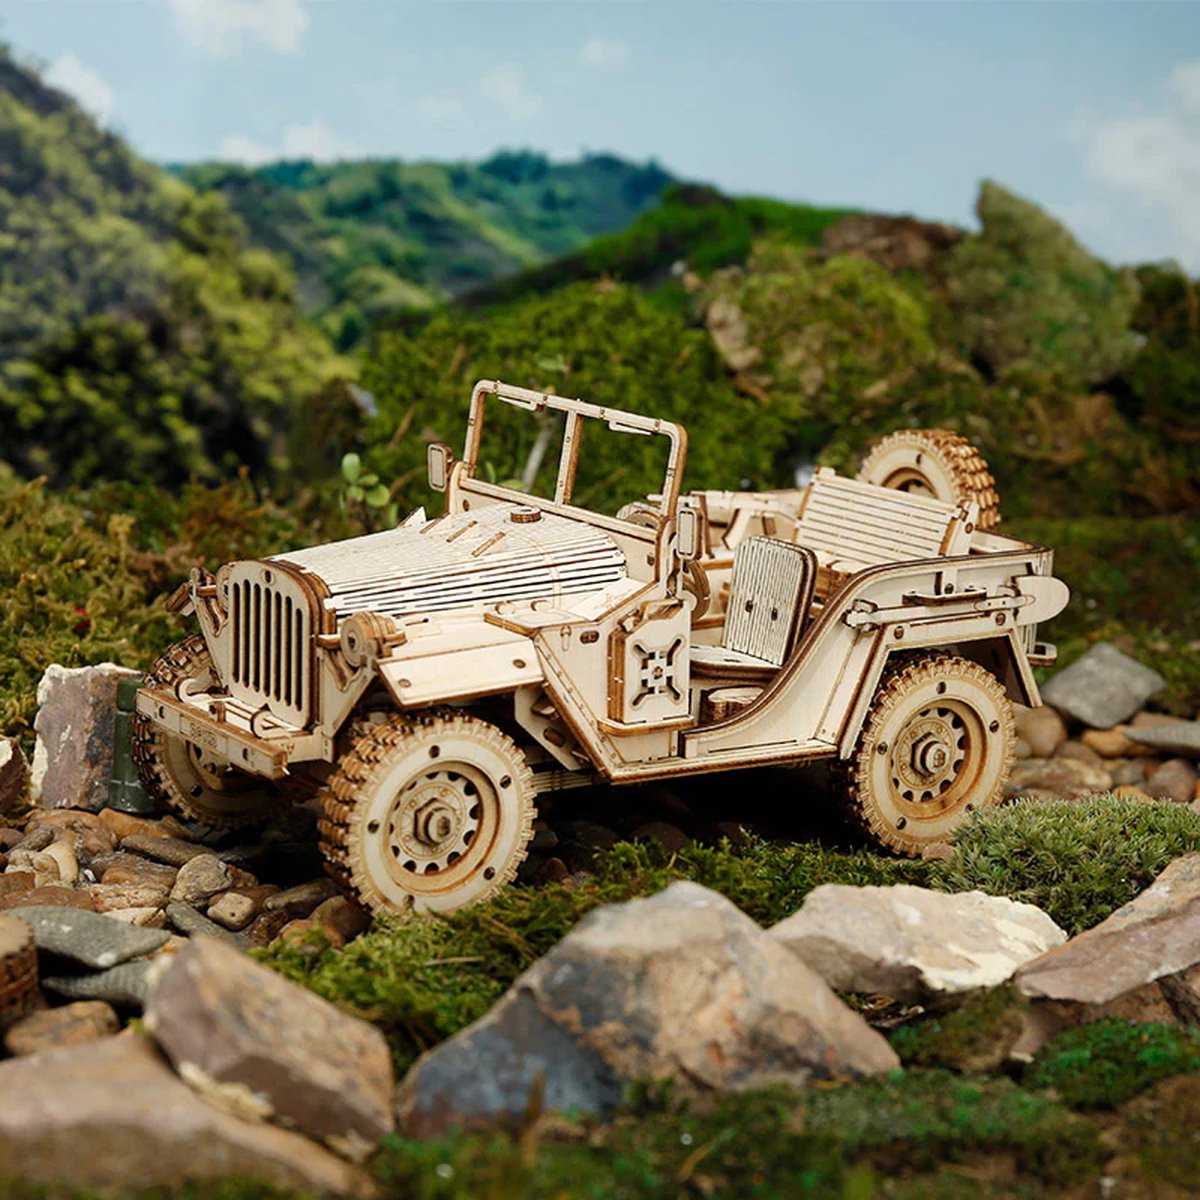 Robotime - Army Field Car - Leger voertuig - Militaire auto - Houten modelbouw - Modelbouw - DIY - Knutselen - Bouwpakket - Houten 3D puzzel voor volwassenen - Vrije tijd - Educatief - Ontspanning - Tot rust komen - Houten puzzel